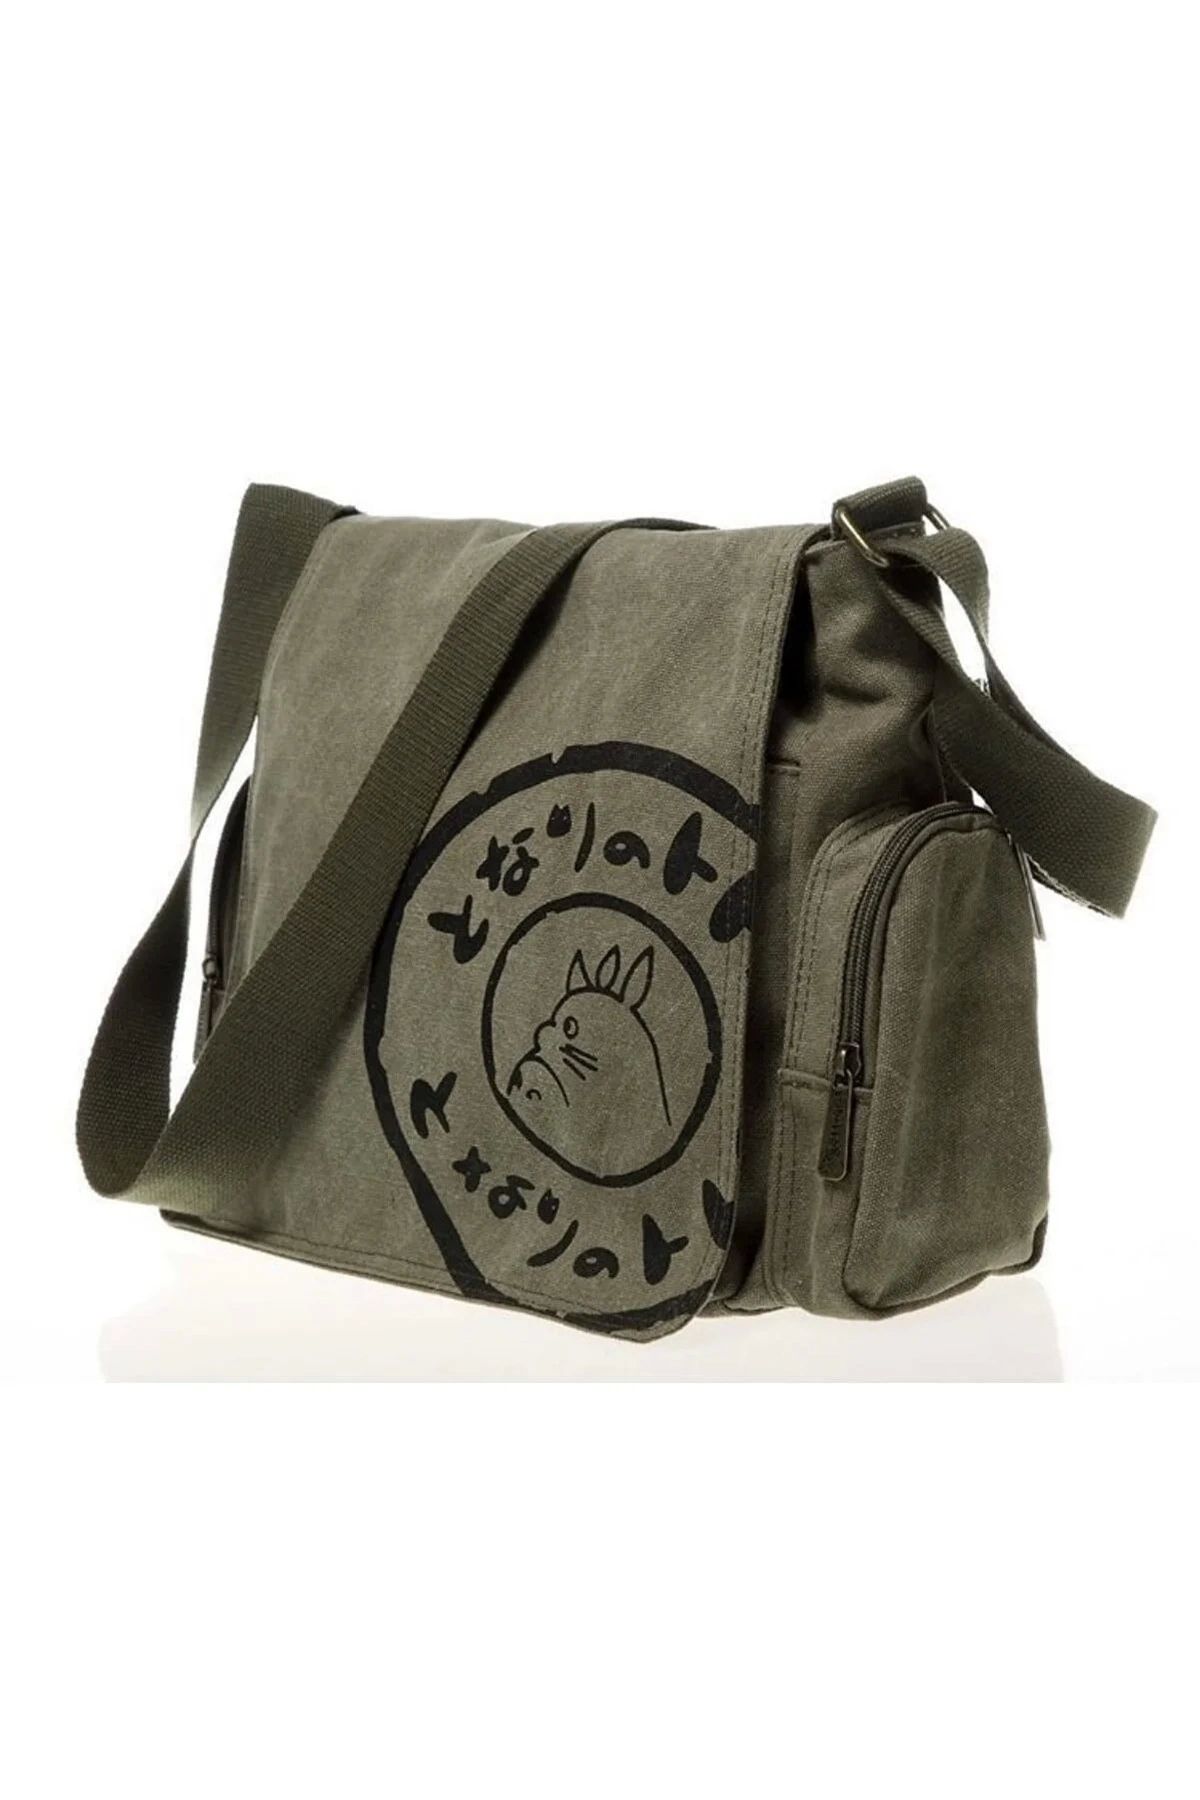 Gofeel Postacı Çanta Totoro Bag Haki Yeşil Ve Siyah Renk Detaylı